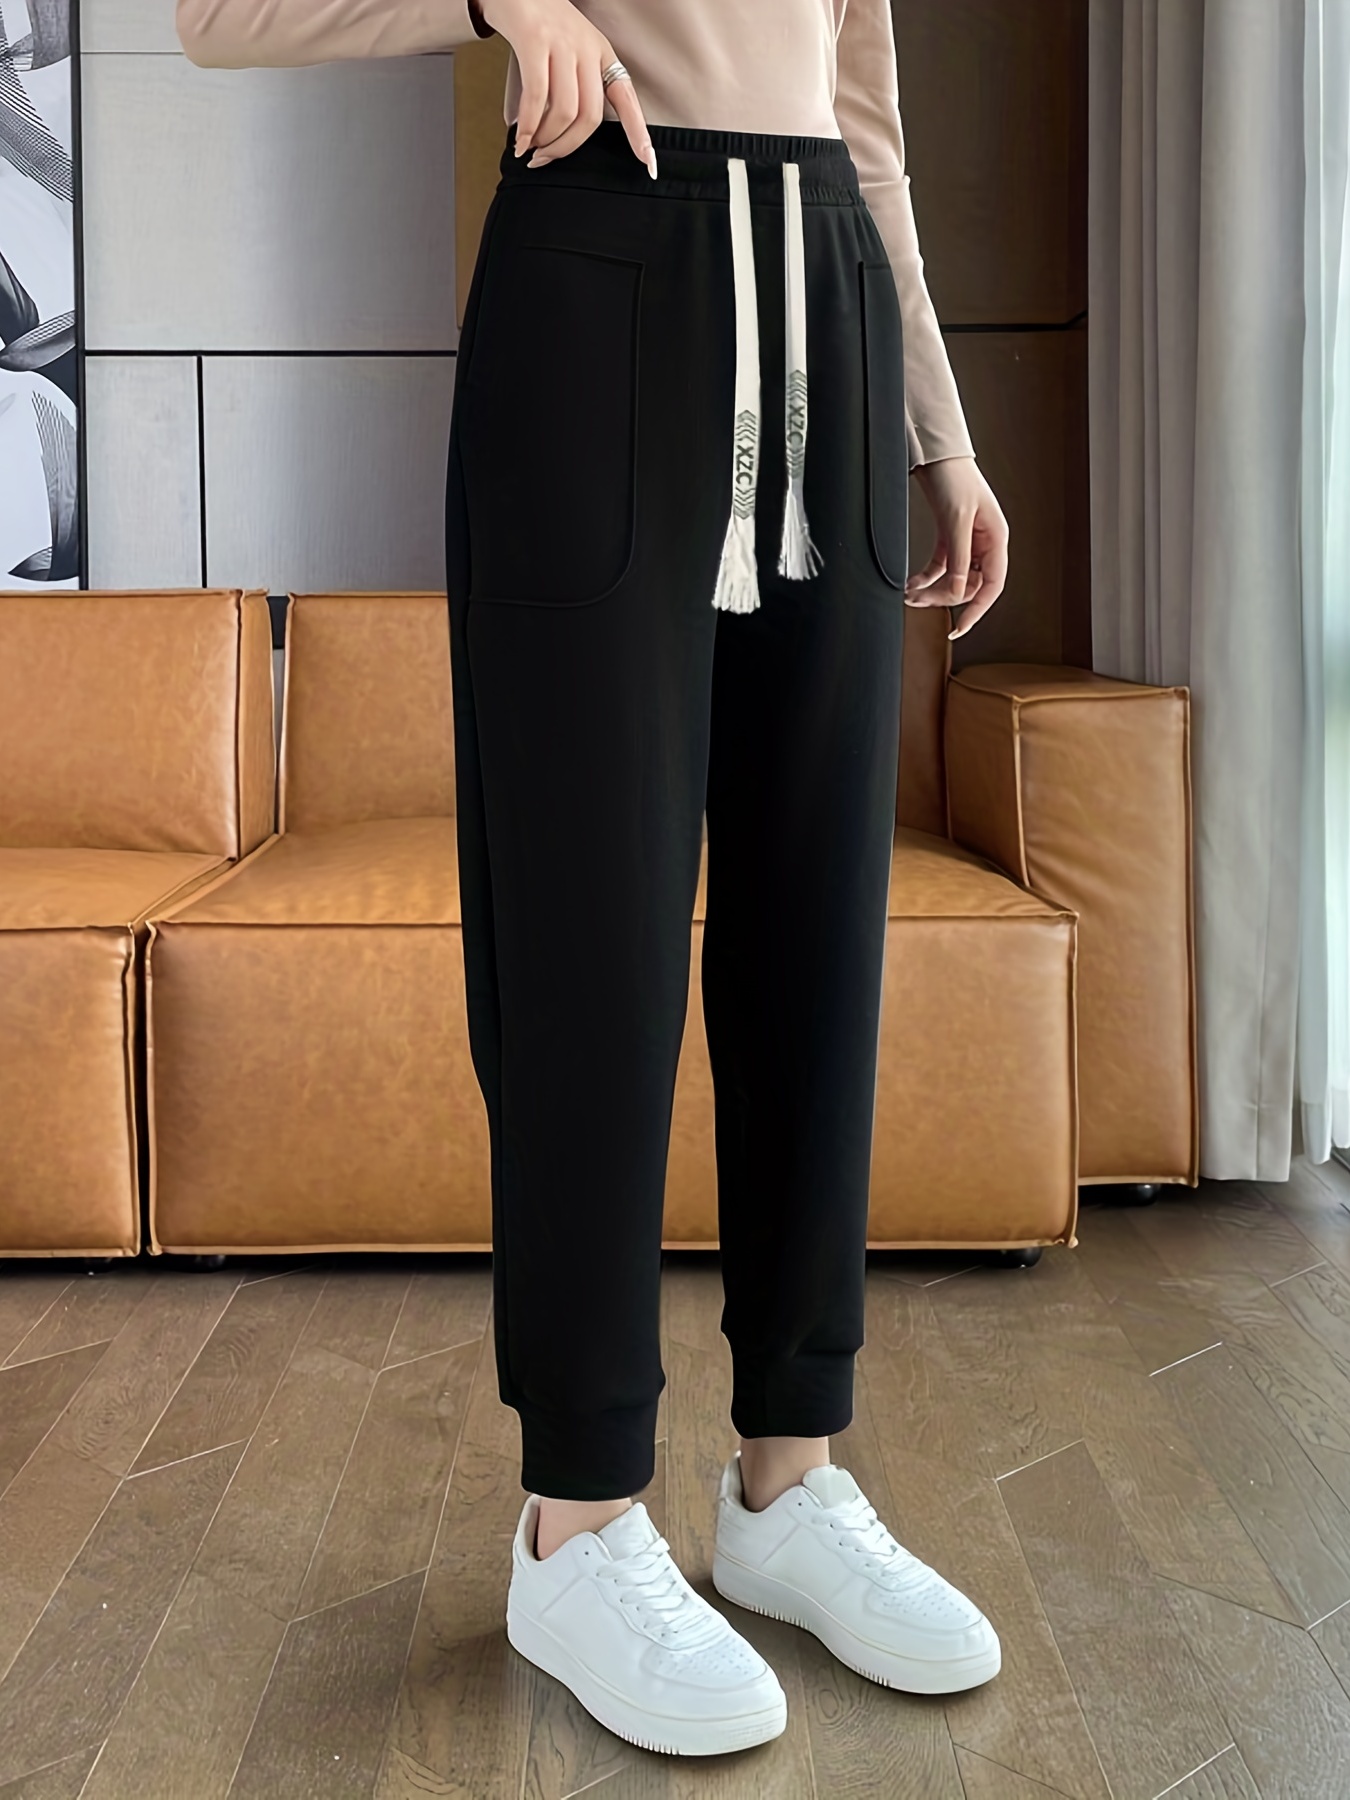 Pantalones deportivos de algodón para mujer, cintura alta, pantalones  deportivos holgados con bolsillos